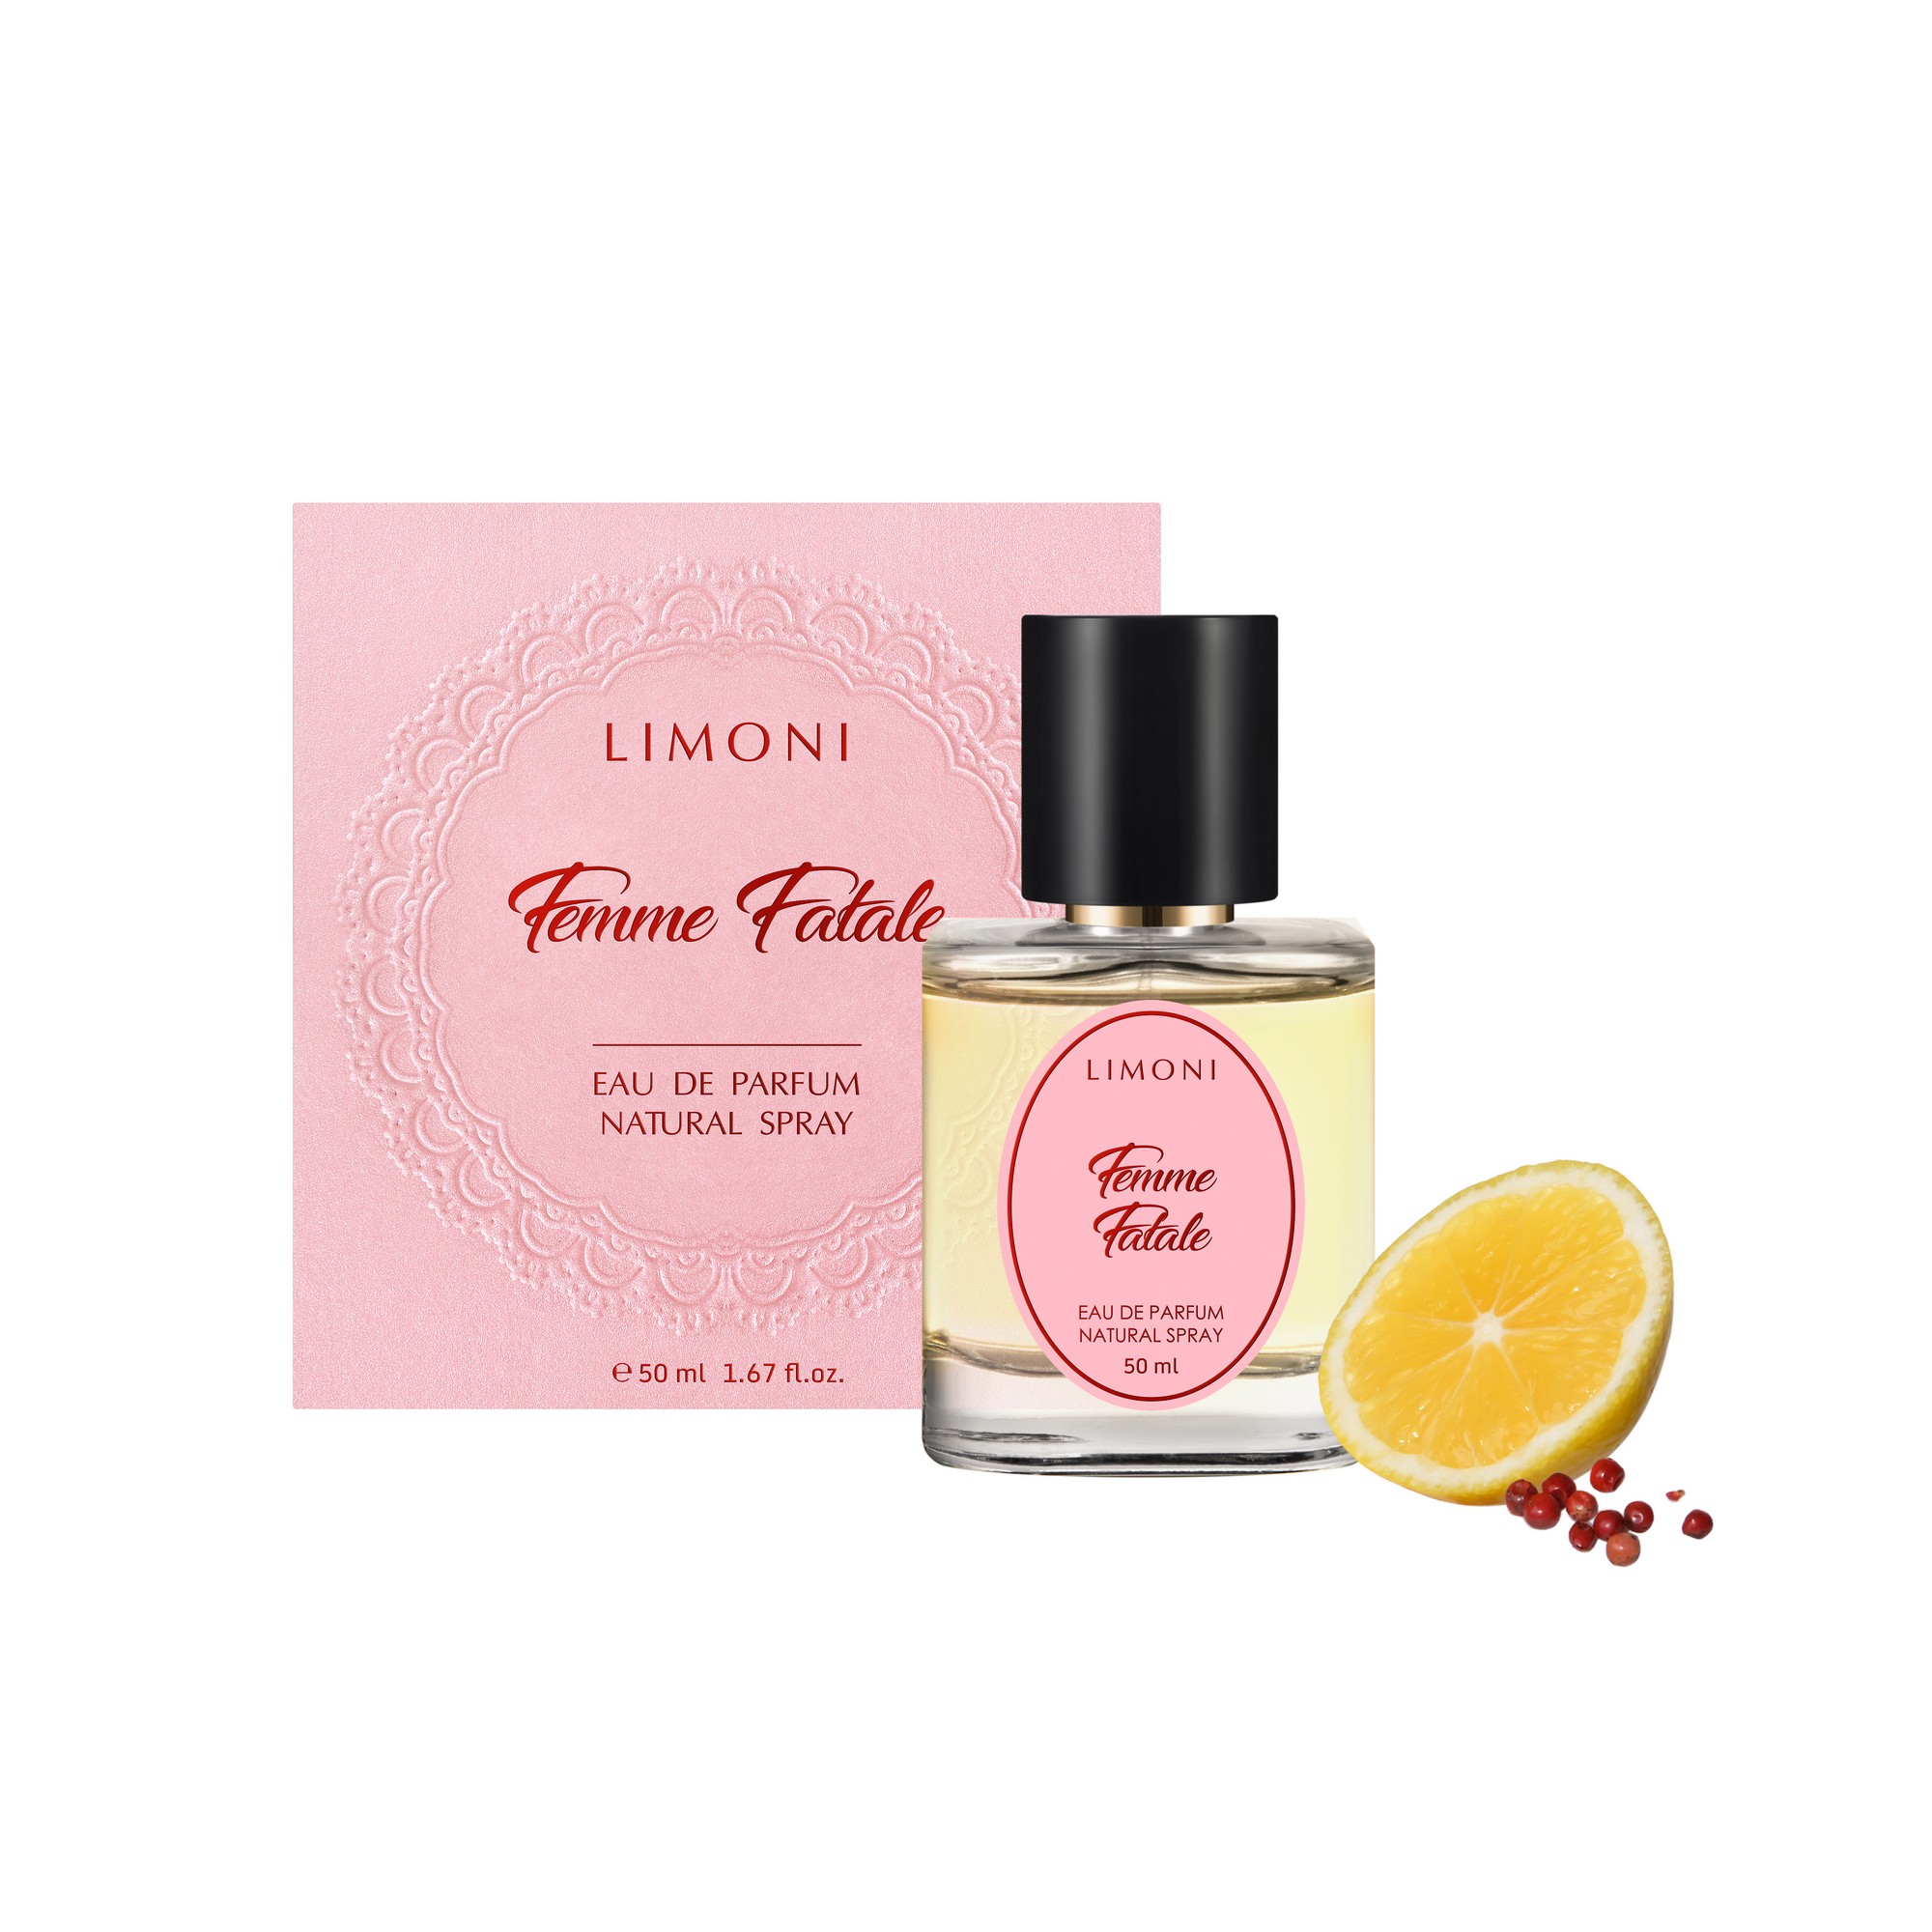 LIMONI Вода парфюмерная Femme Fatale / LIMONI Eau de Parfum, 50 мл